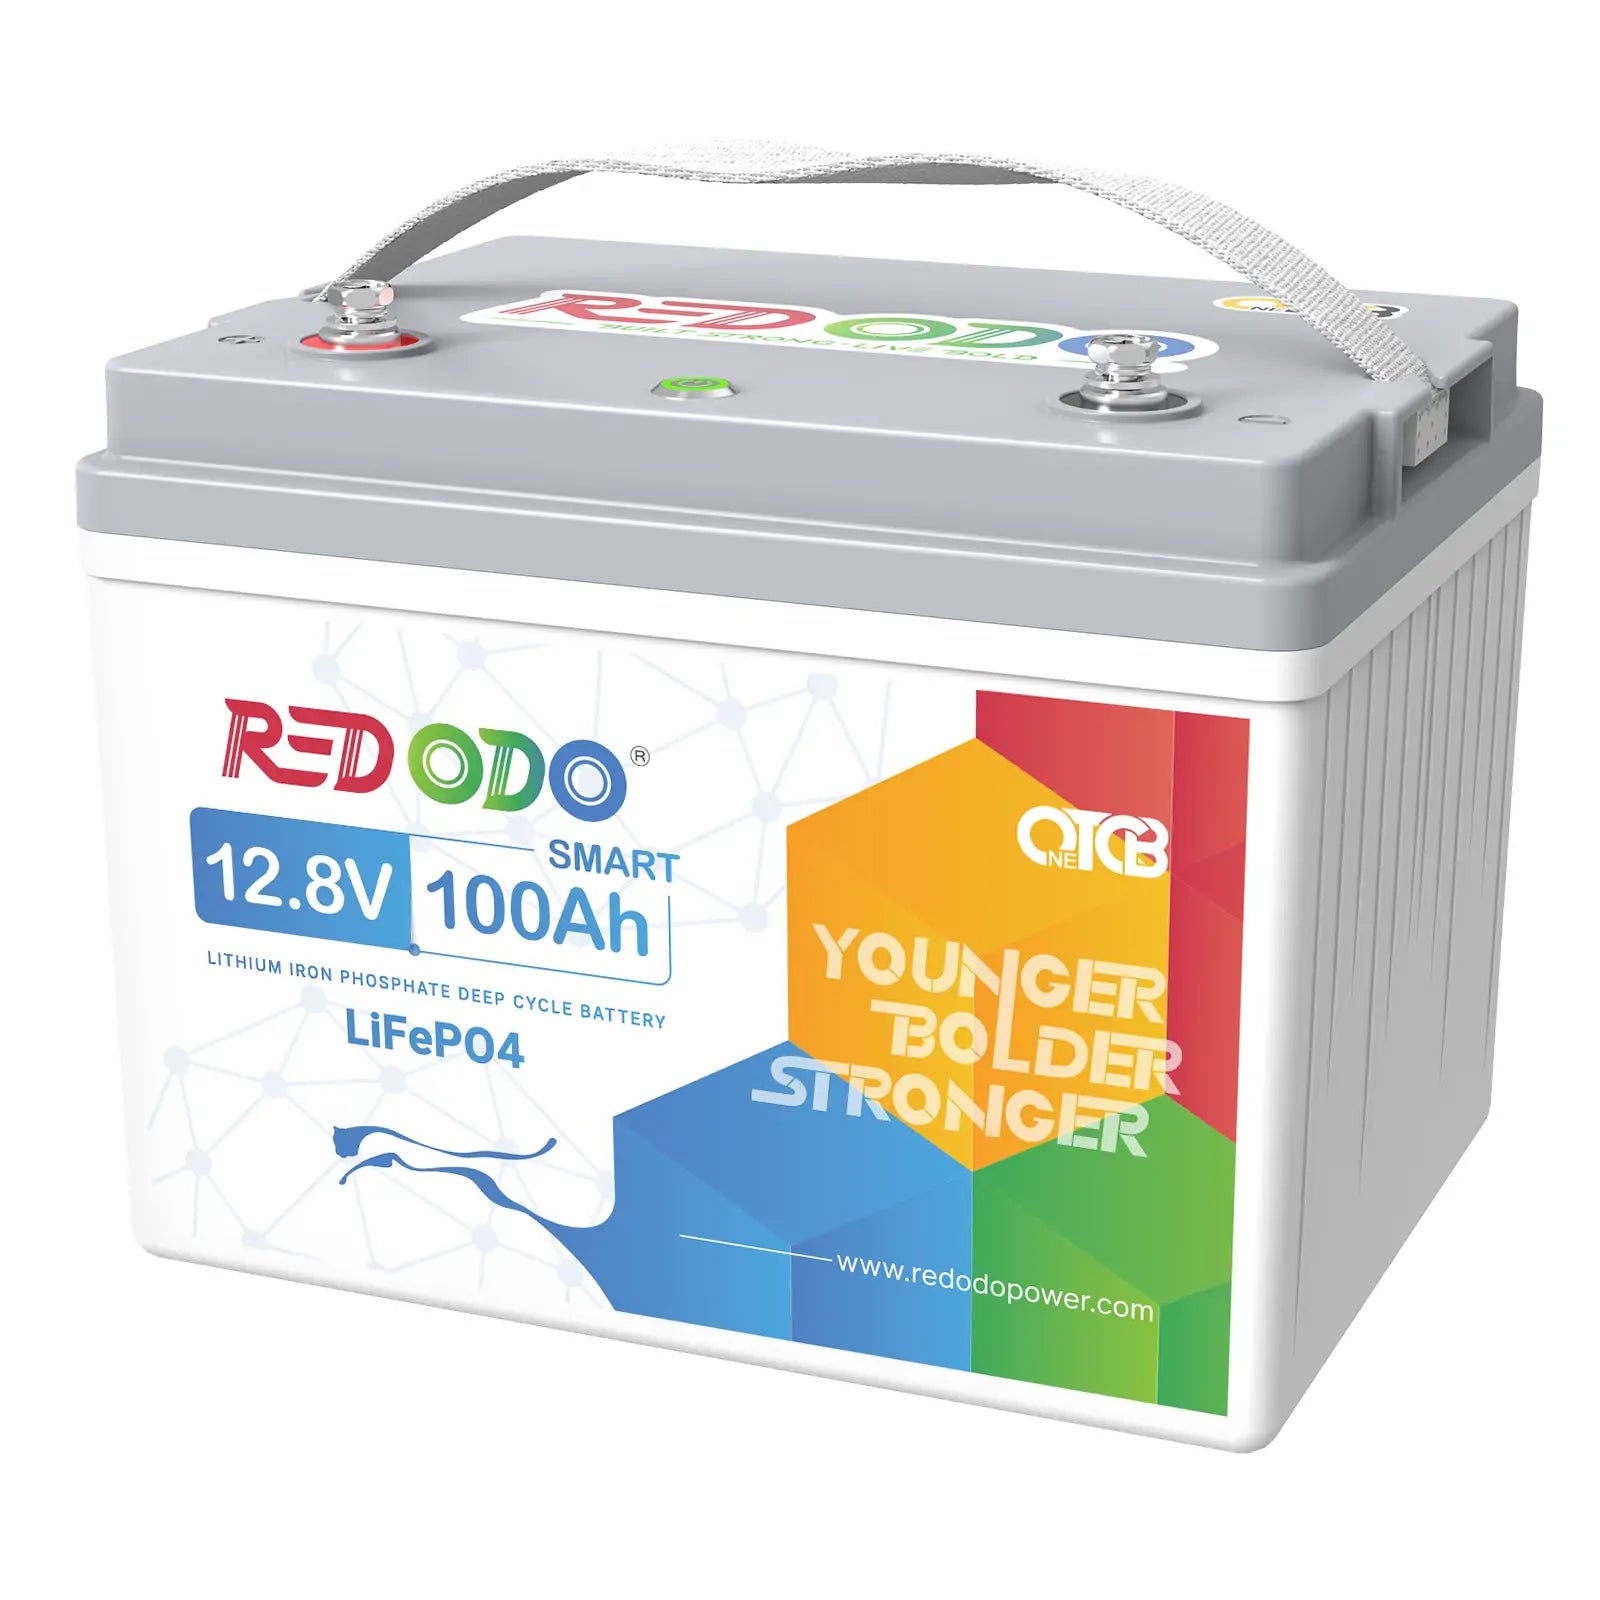 Redodo 29.2V 20A LiFePO4 Battery Charger - Redodo Power